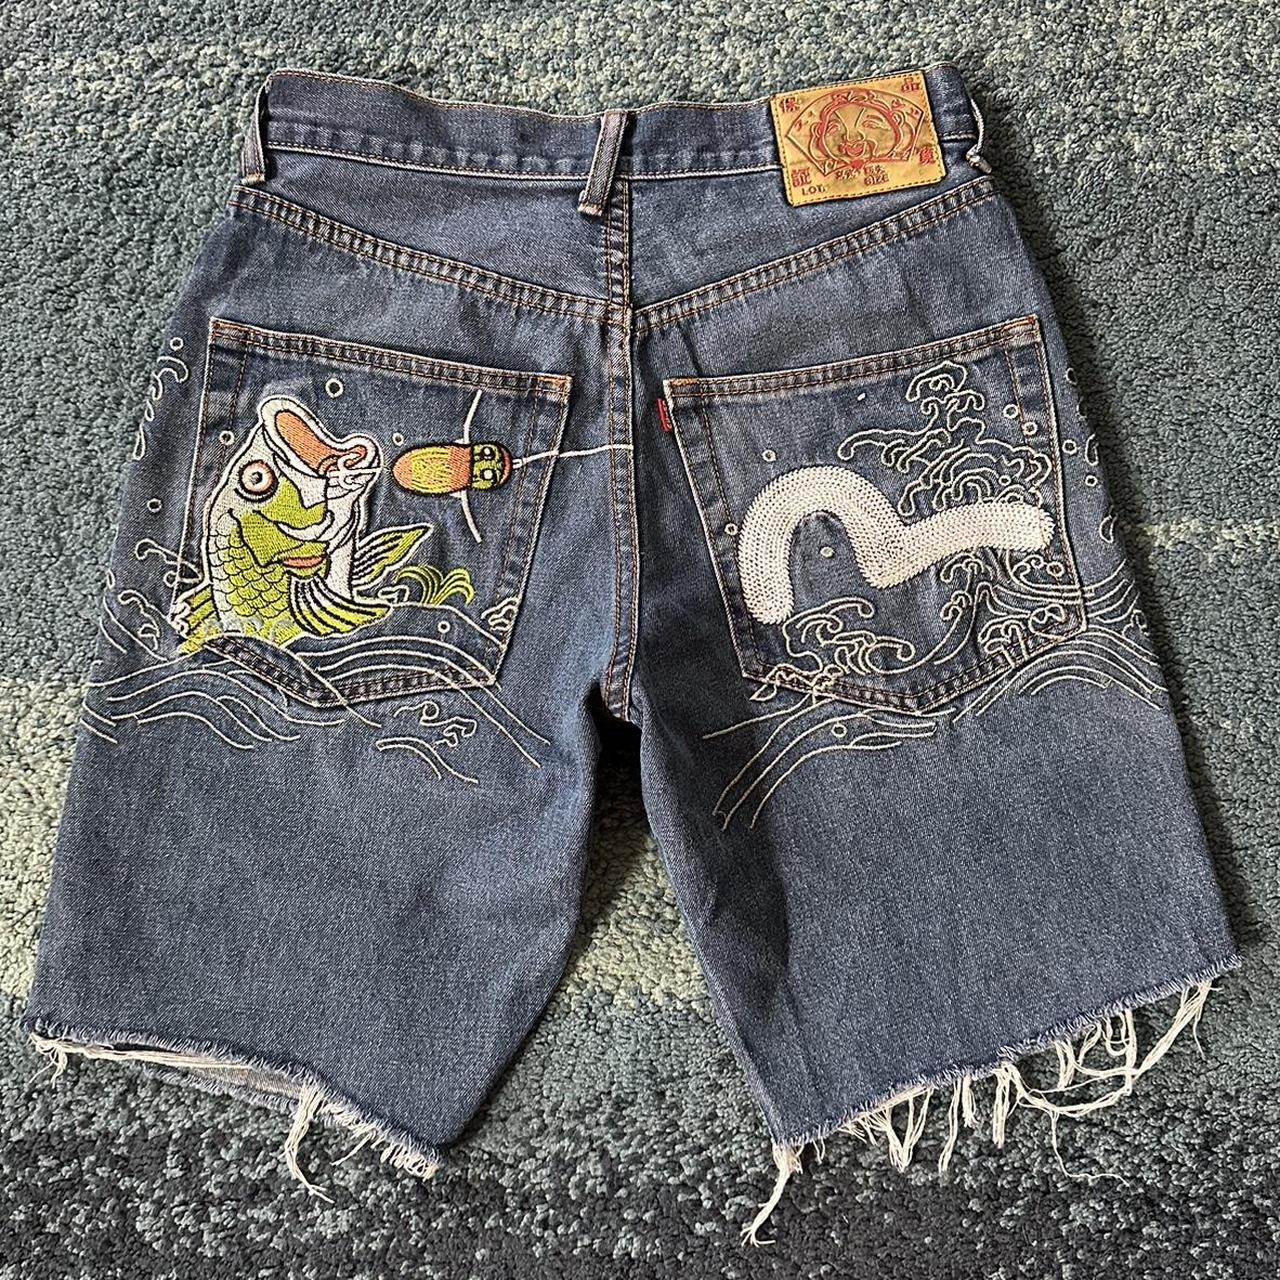 Crazy Vintage Y2K Evisu Jeans Japanese Denim Rare... - Depop